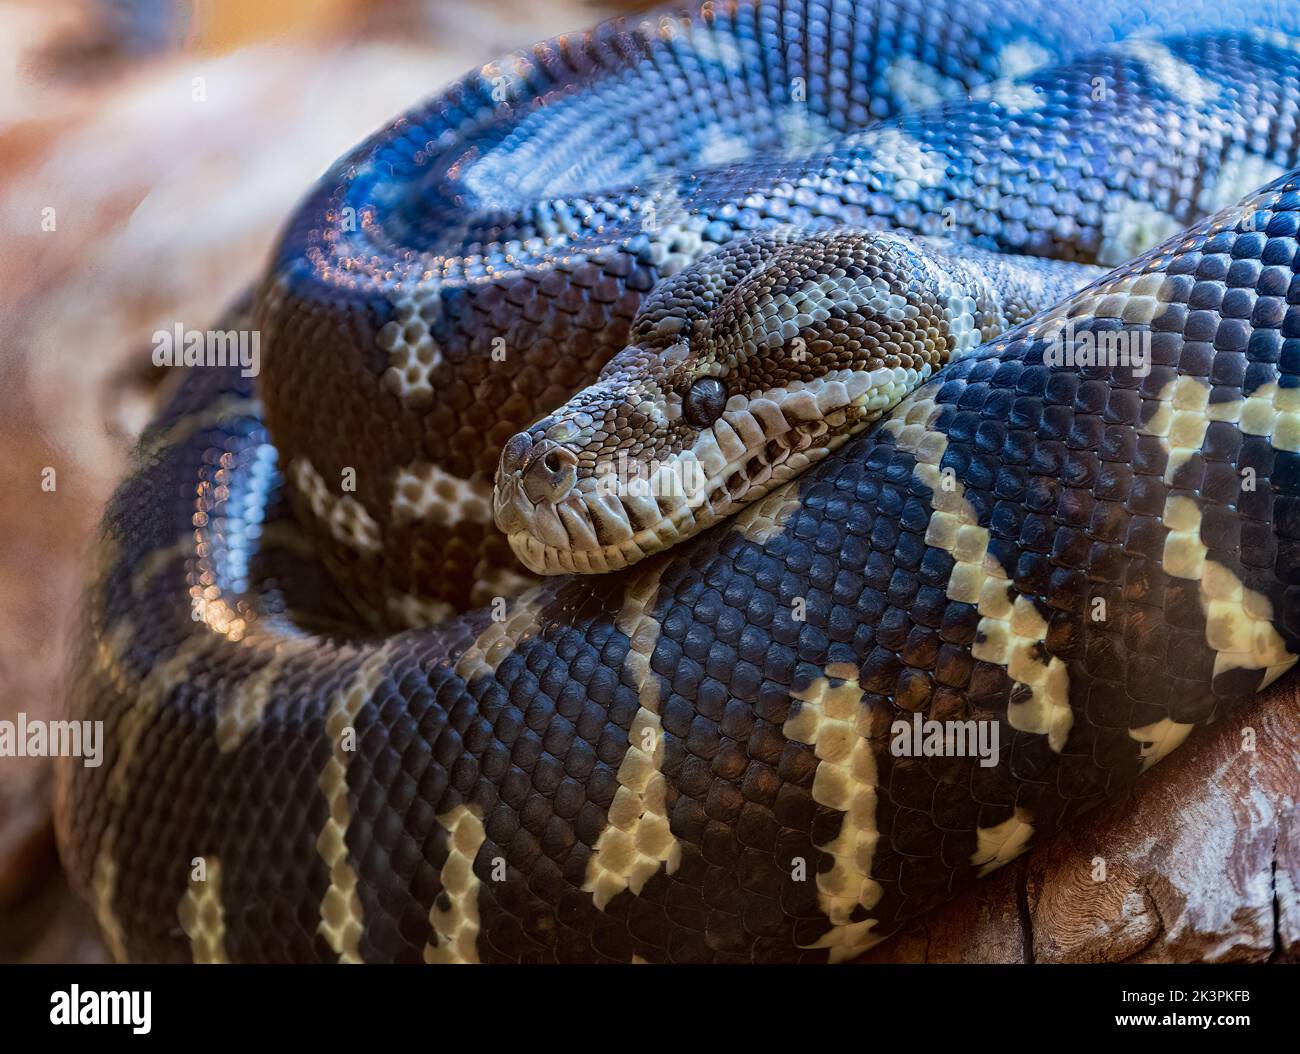 Centralian Carpet Python (Morelia spilota bredli) est originaire d'Australie. Captif. Banque D'Images